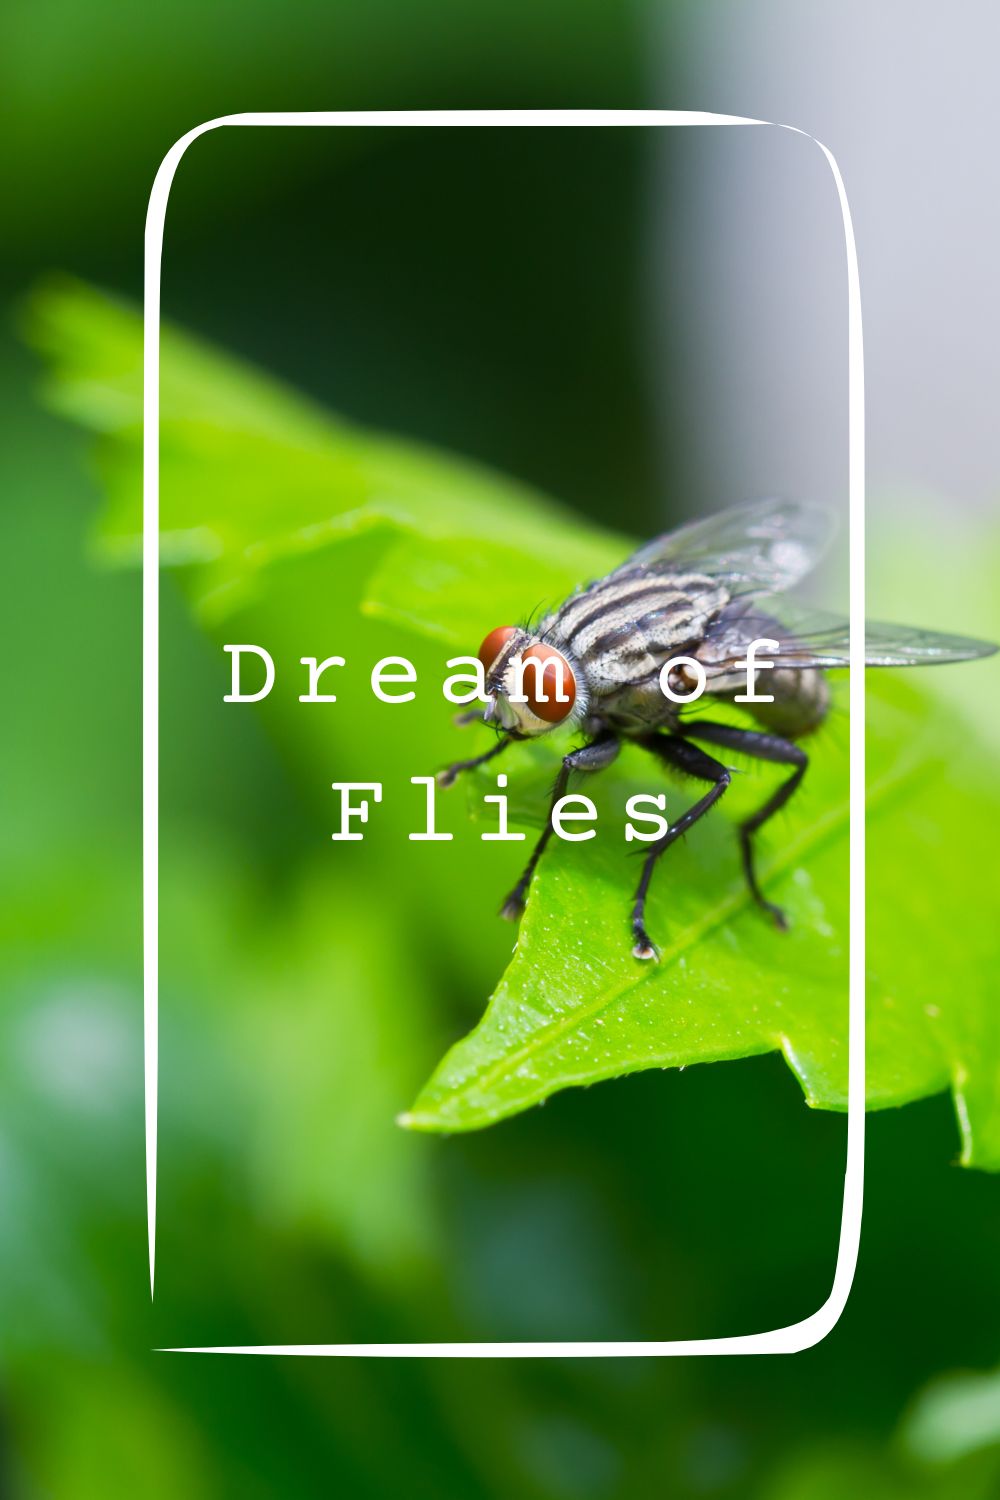 9 Dream of Flies Meanings4